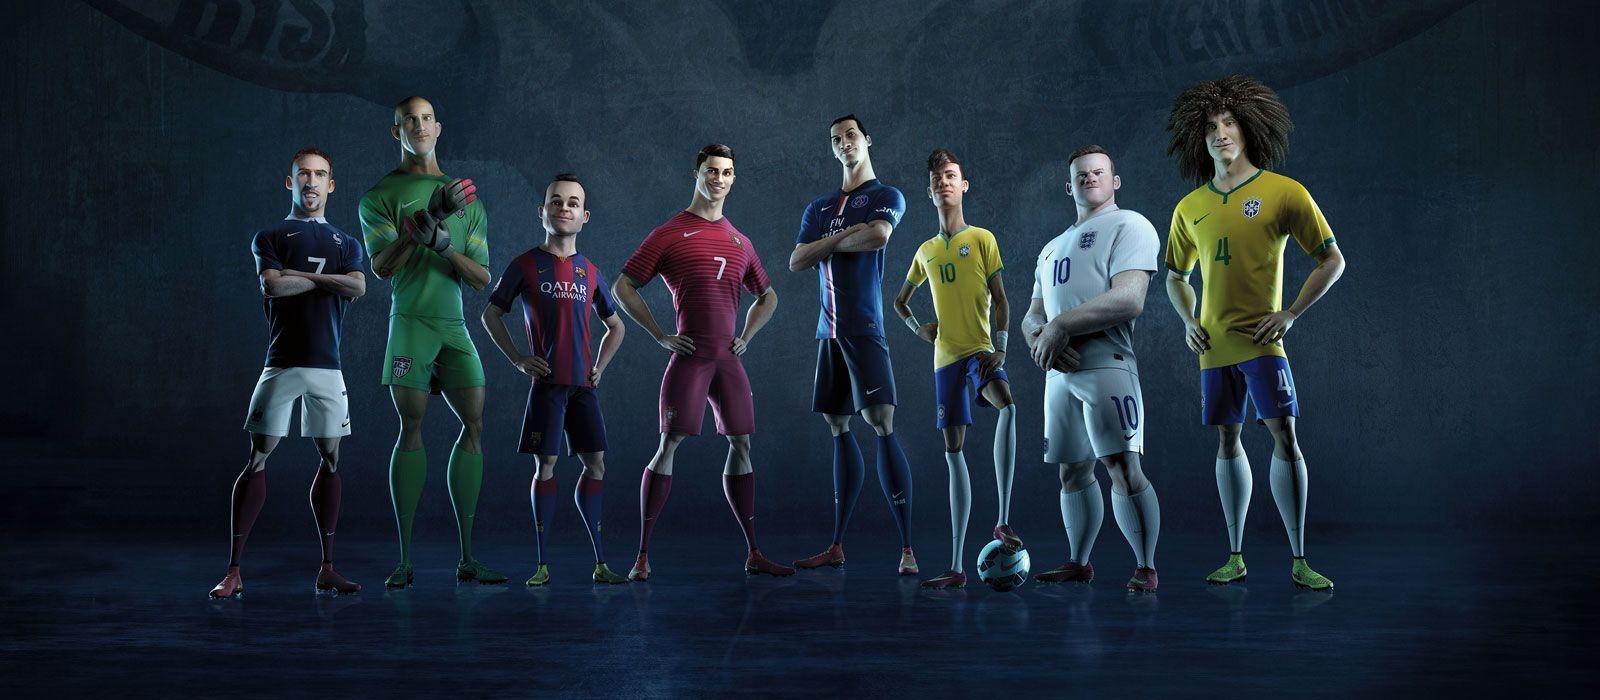 Nike Football Wallpaper Desktop Picserio